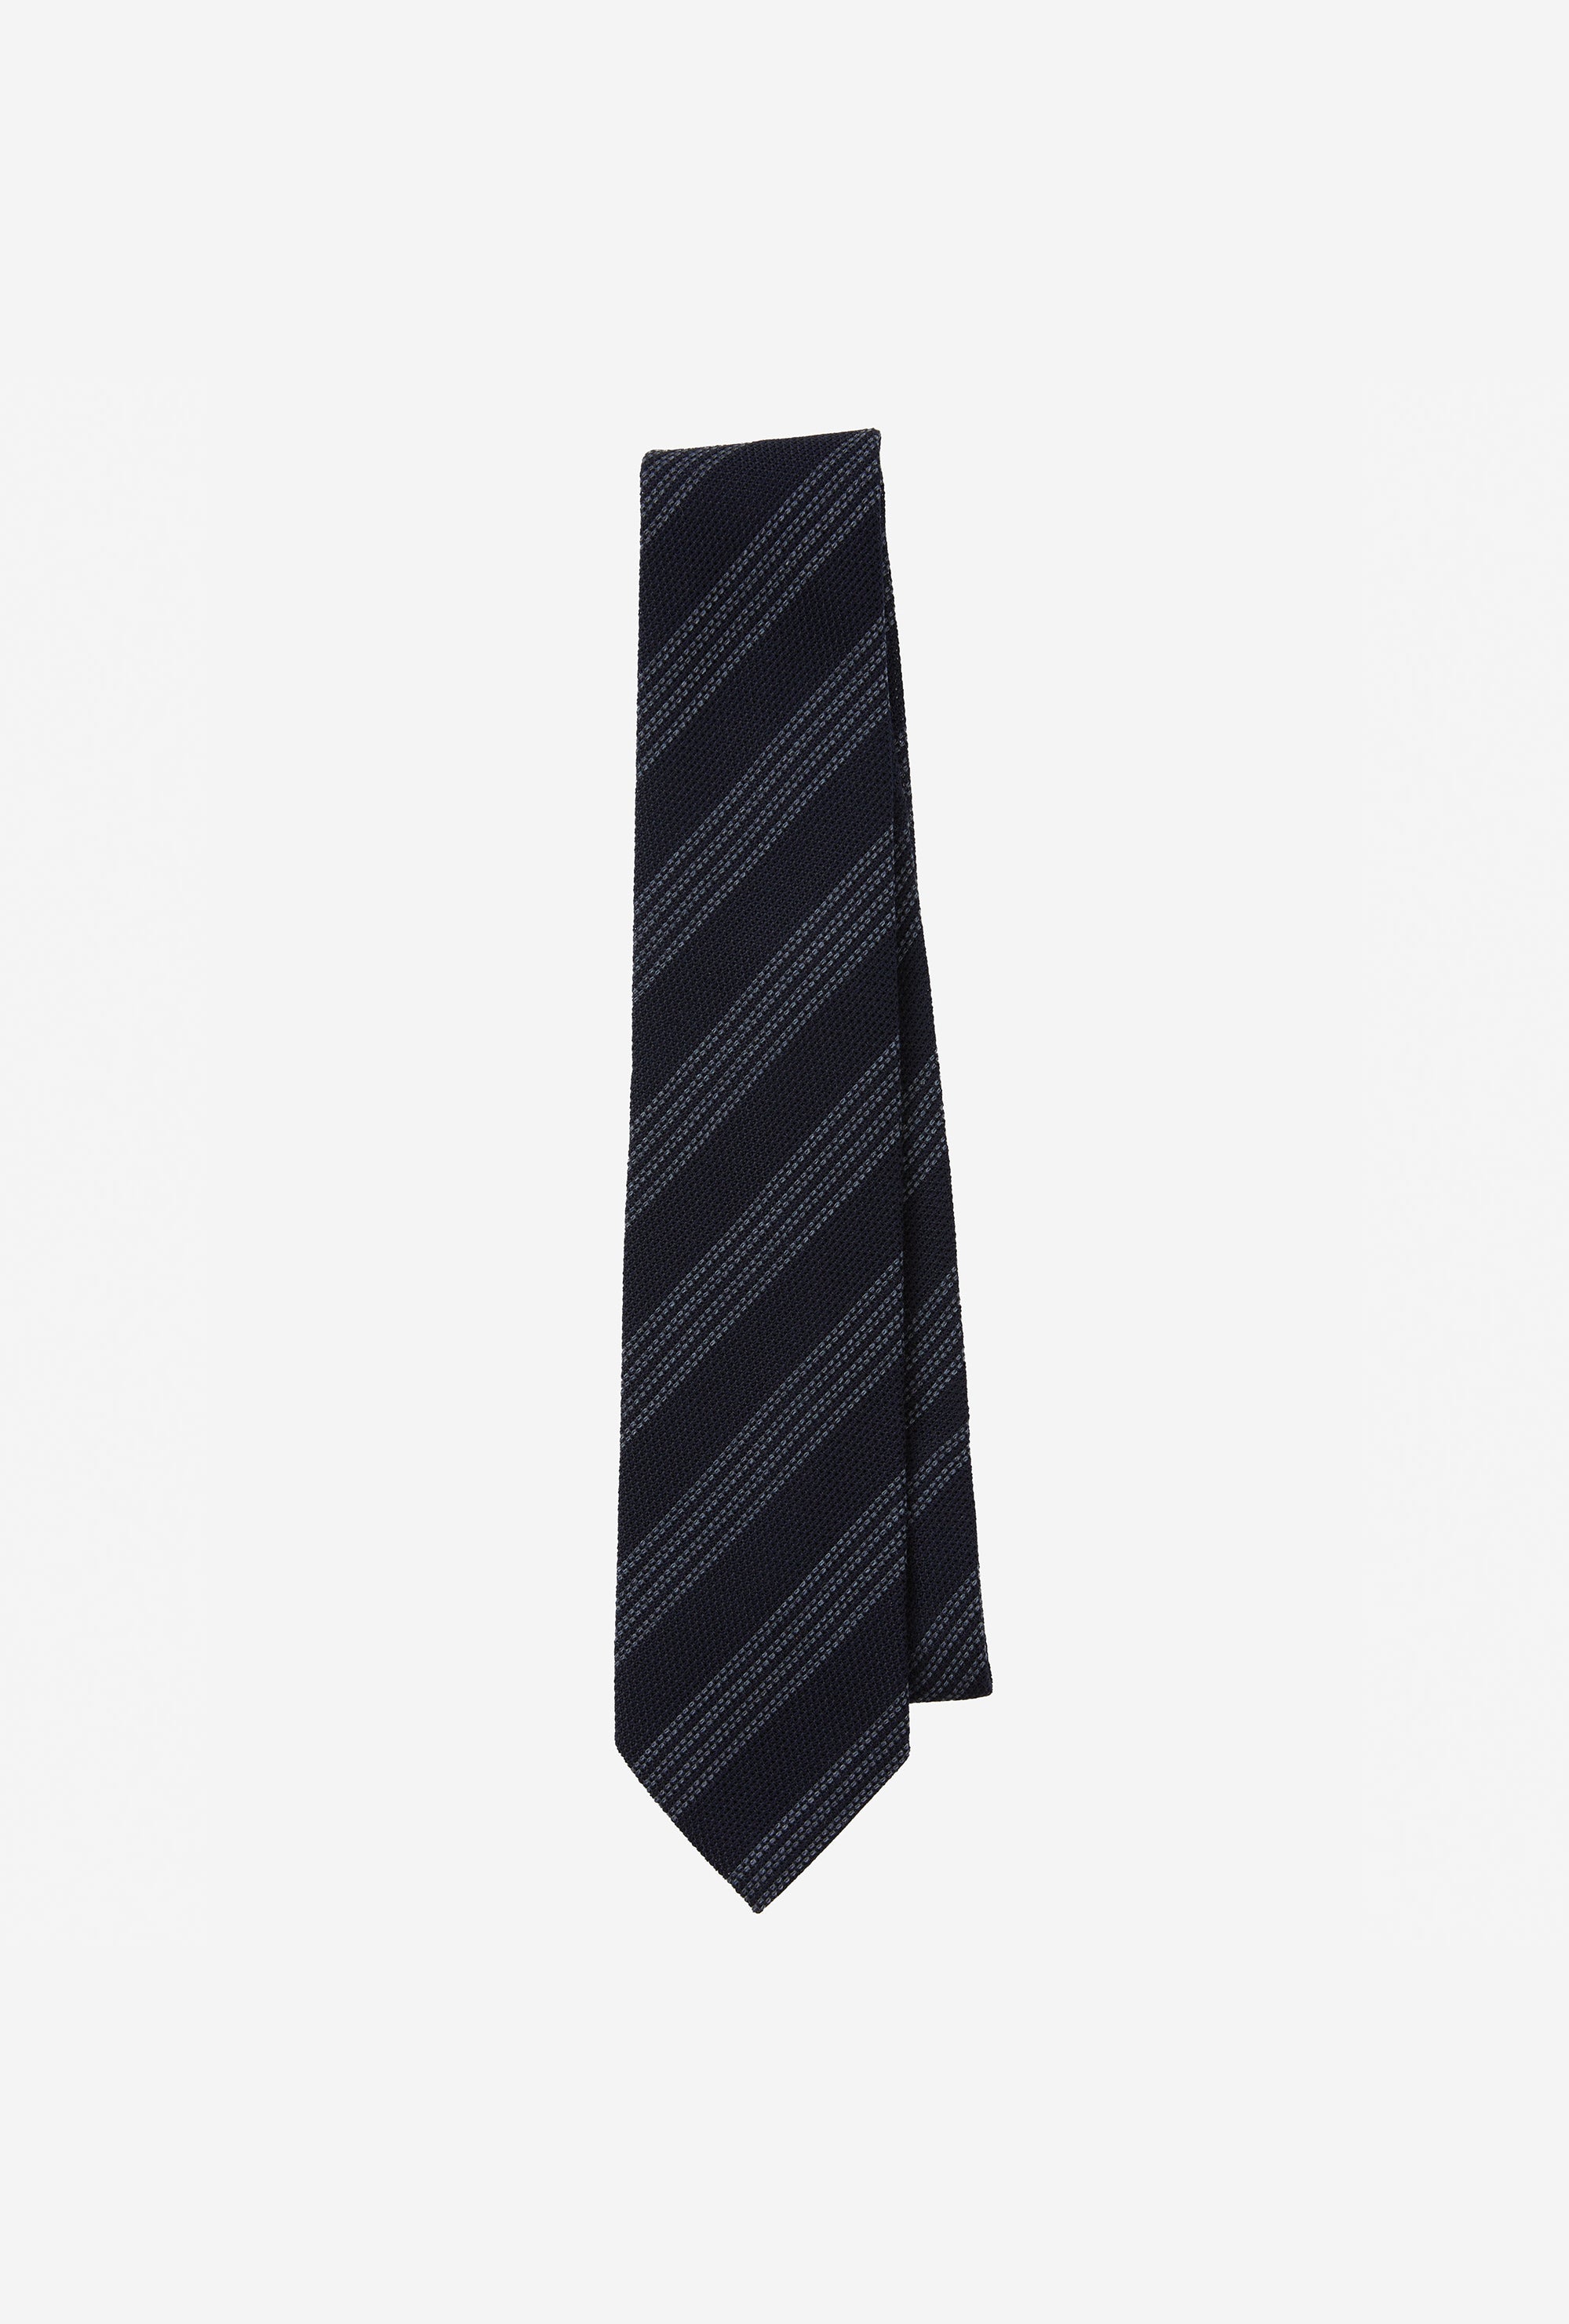 Tie Grenadine Navy Grey Multi Stripe